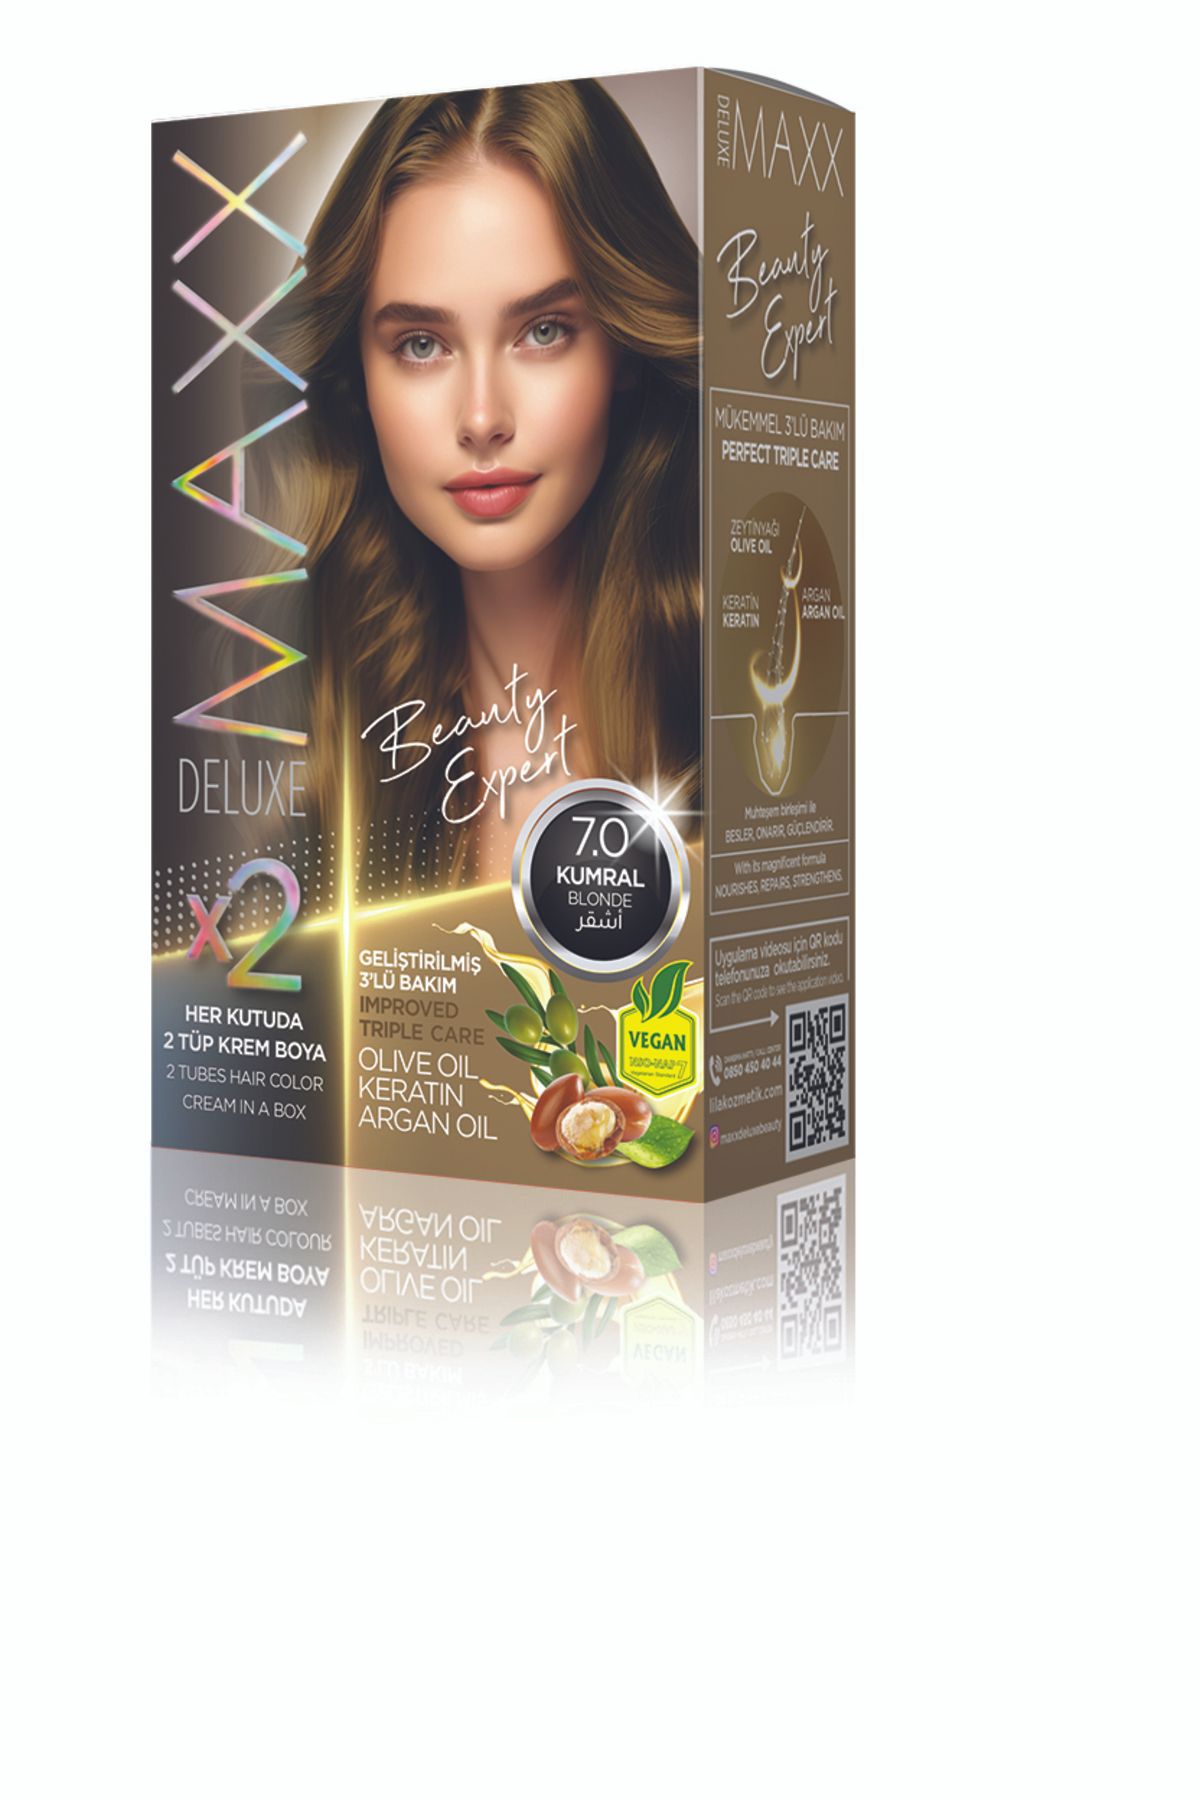 MAXX DELUXE Beauty Serıes Keratinli Kalıcı Saç Boyası Kutulardaki Şifre Ile Bmw 1.16 Çekilişine Katılmayı Unutma